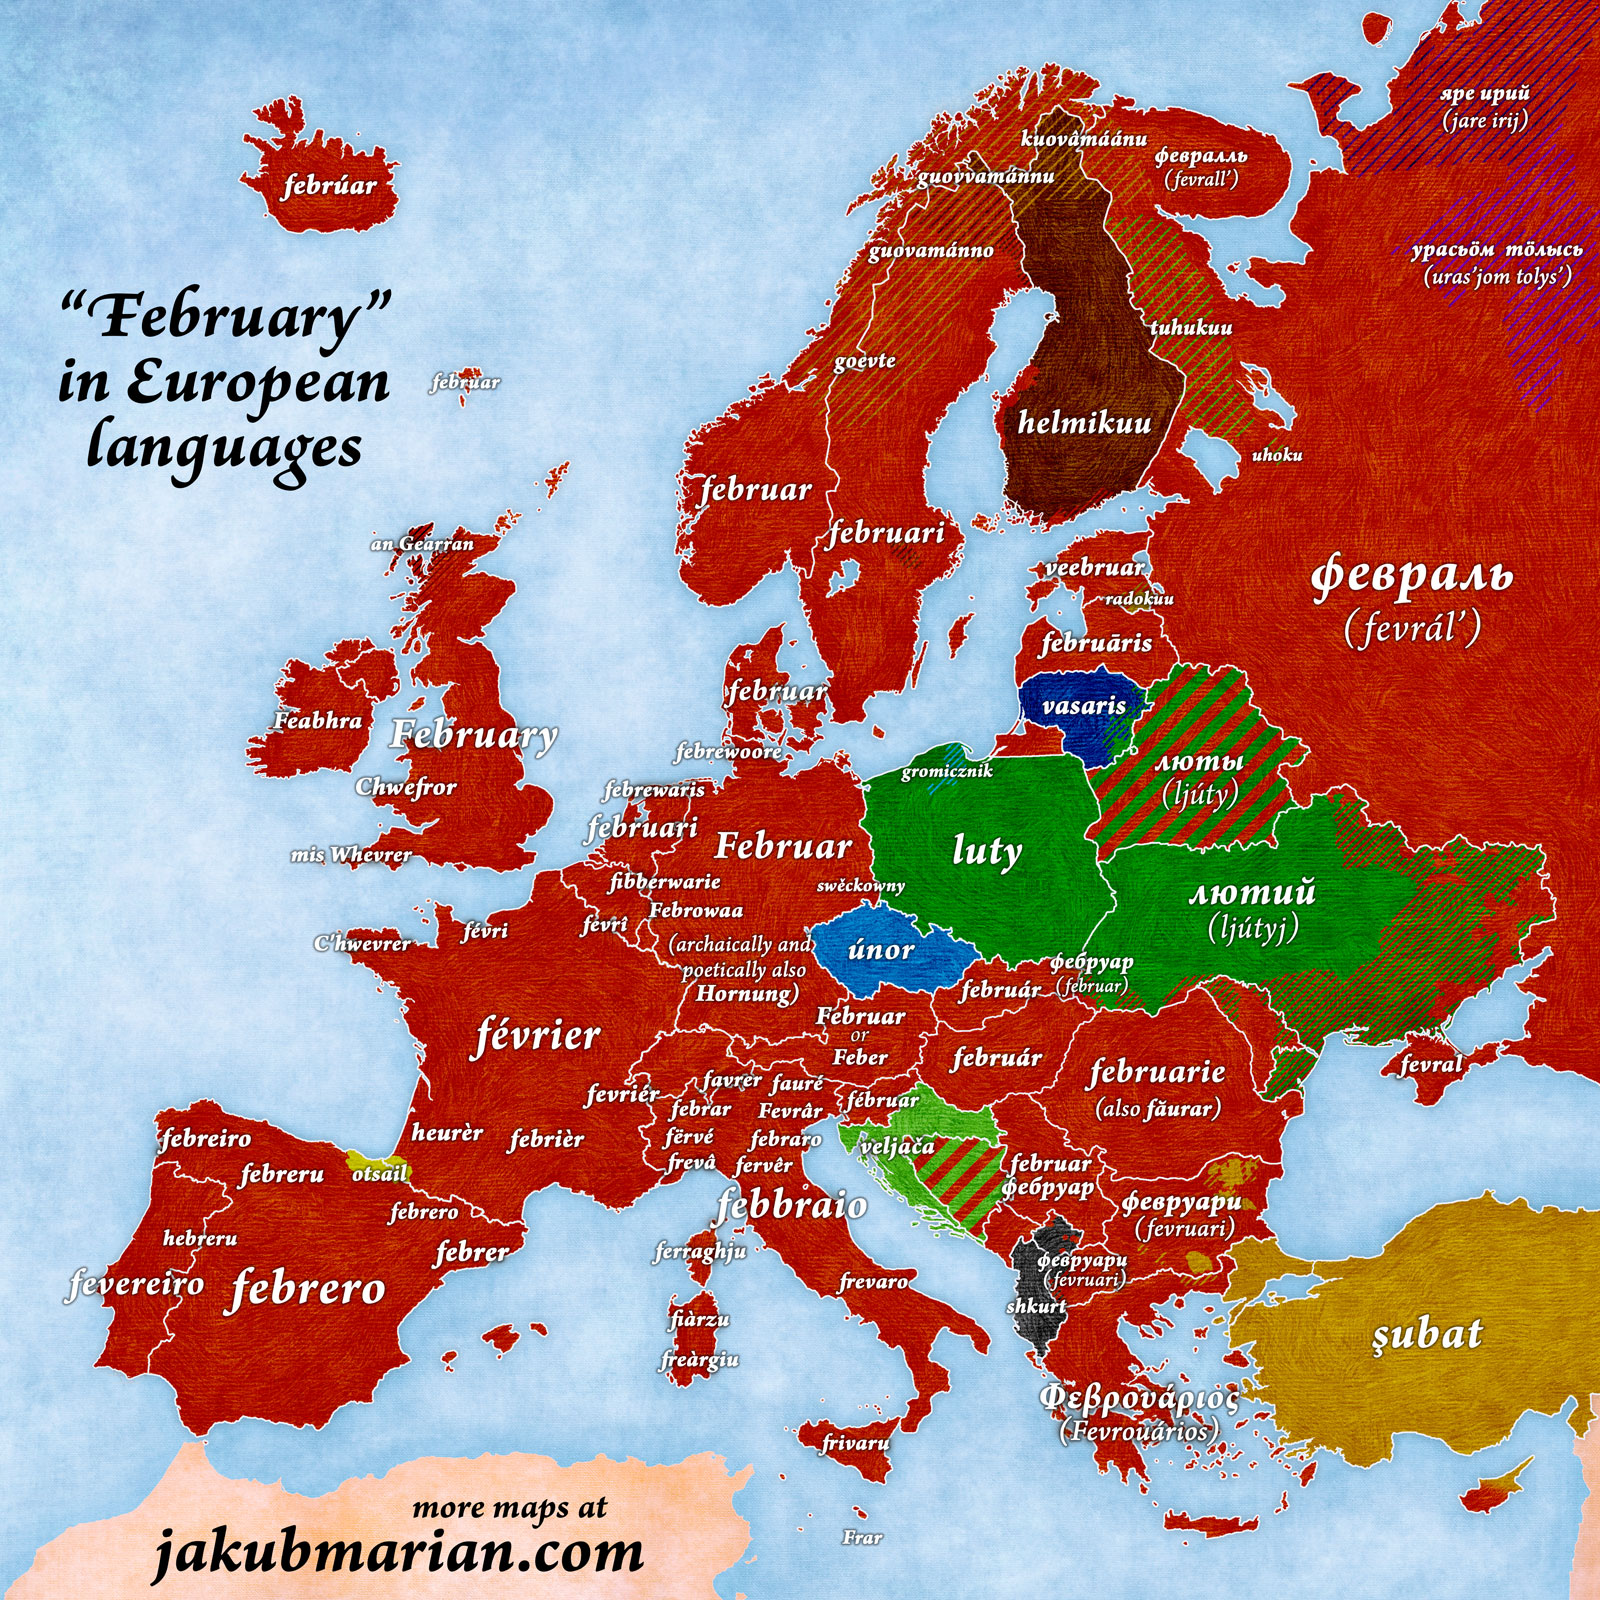 Comment dire janvier dans les langues européennes... February-european-languages